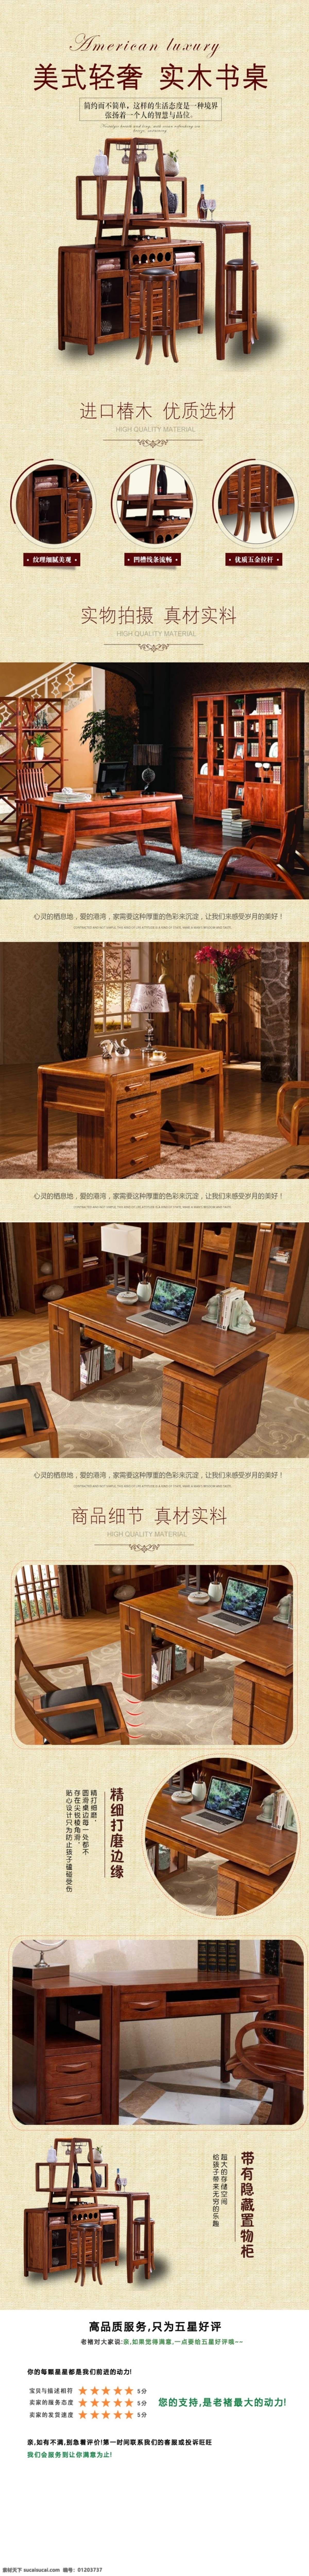 实木 创意 简洁 家具 书柜 详情 页 模板 电脑桌 家具详情页 简洁家具 实木家具 书架 详情页模板